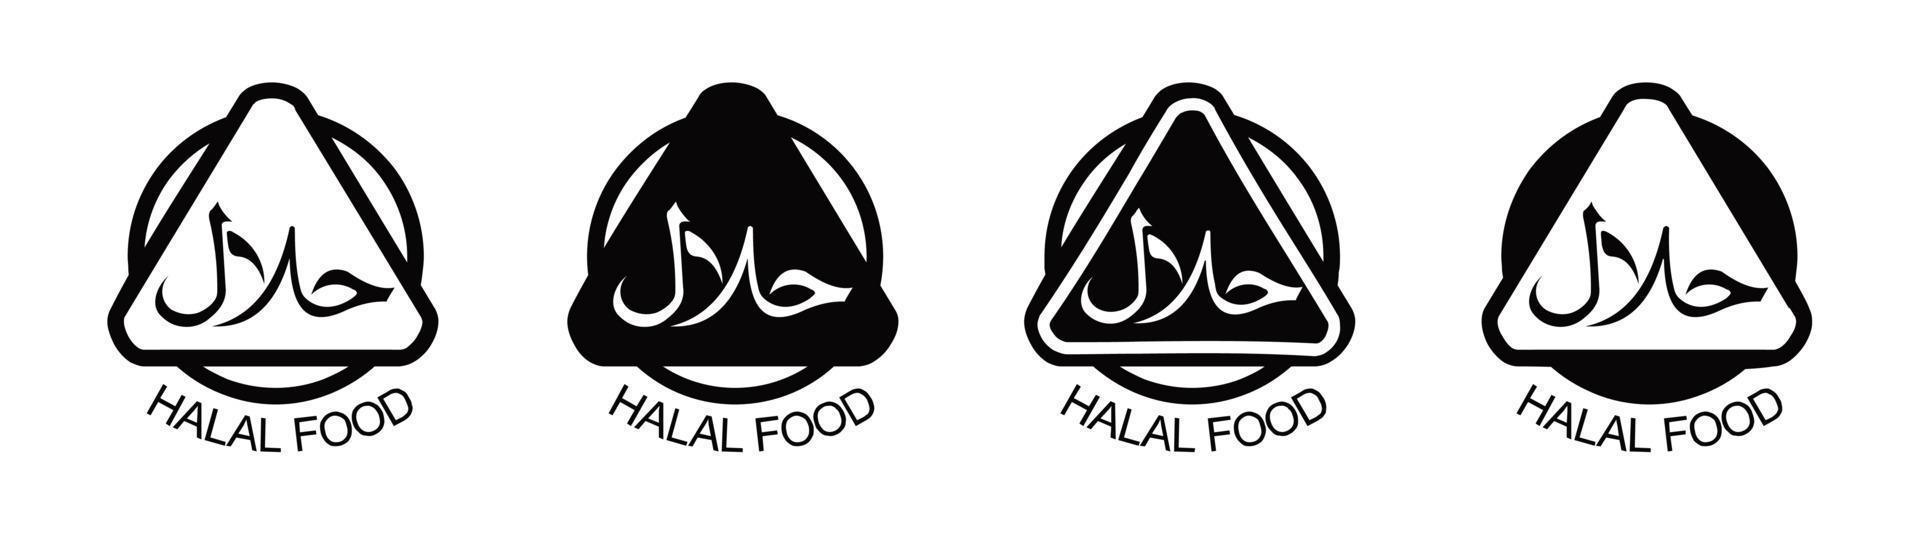 halal ikon uppsättning produkt emblem vektor illustration.set av halal mat Produkter etiketter ,vektor halal tecken certifikat märka.